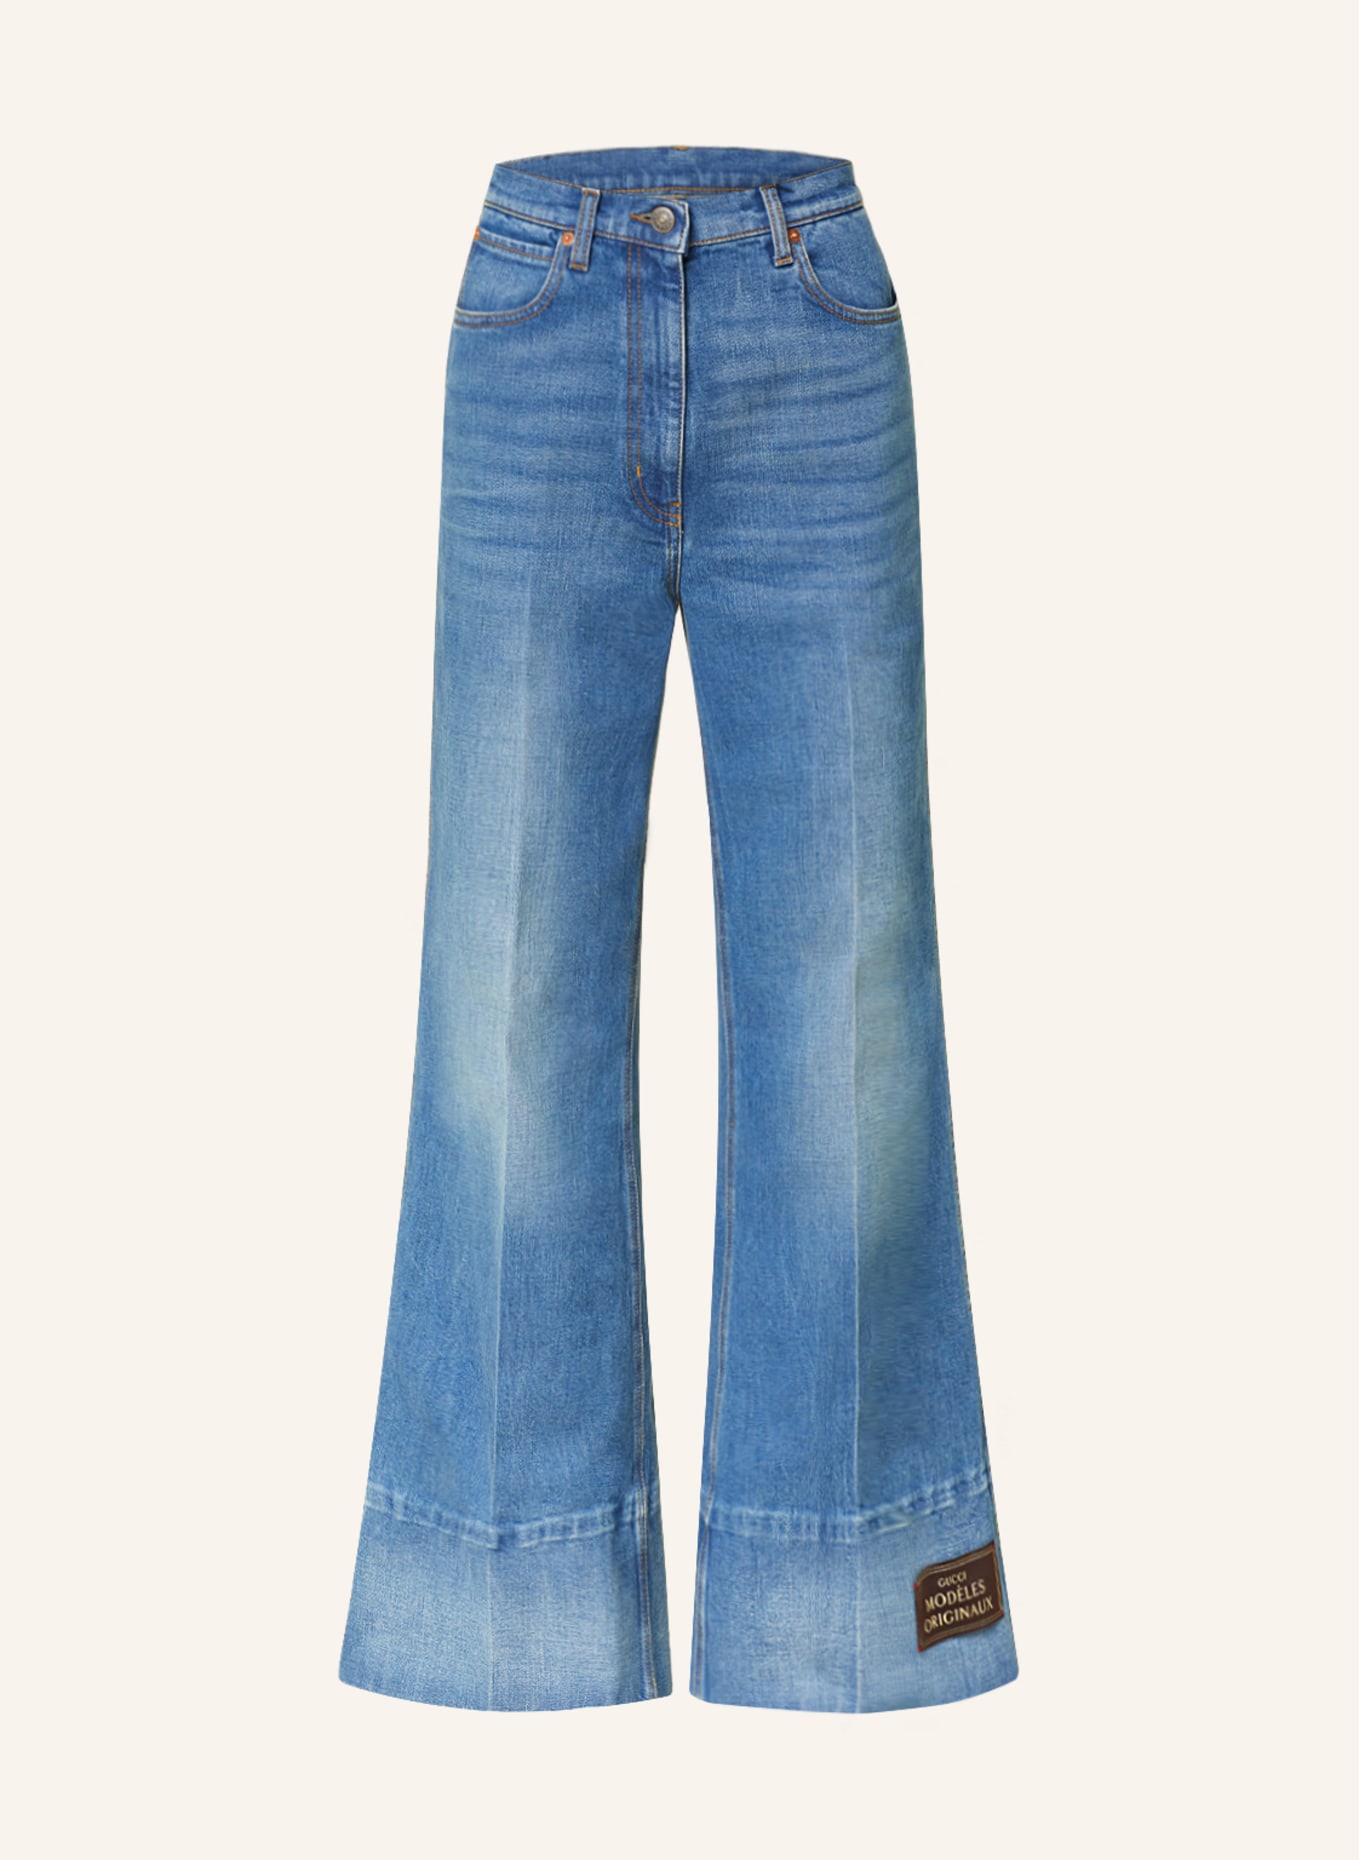 GUCCI Flared Jeans, Farbe: 4759 DARK BLUE/MIX (Bild 1)